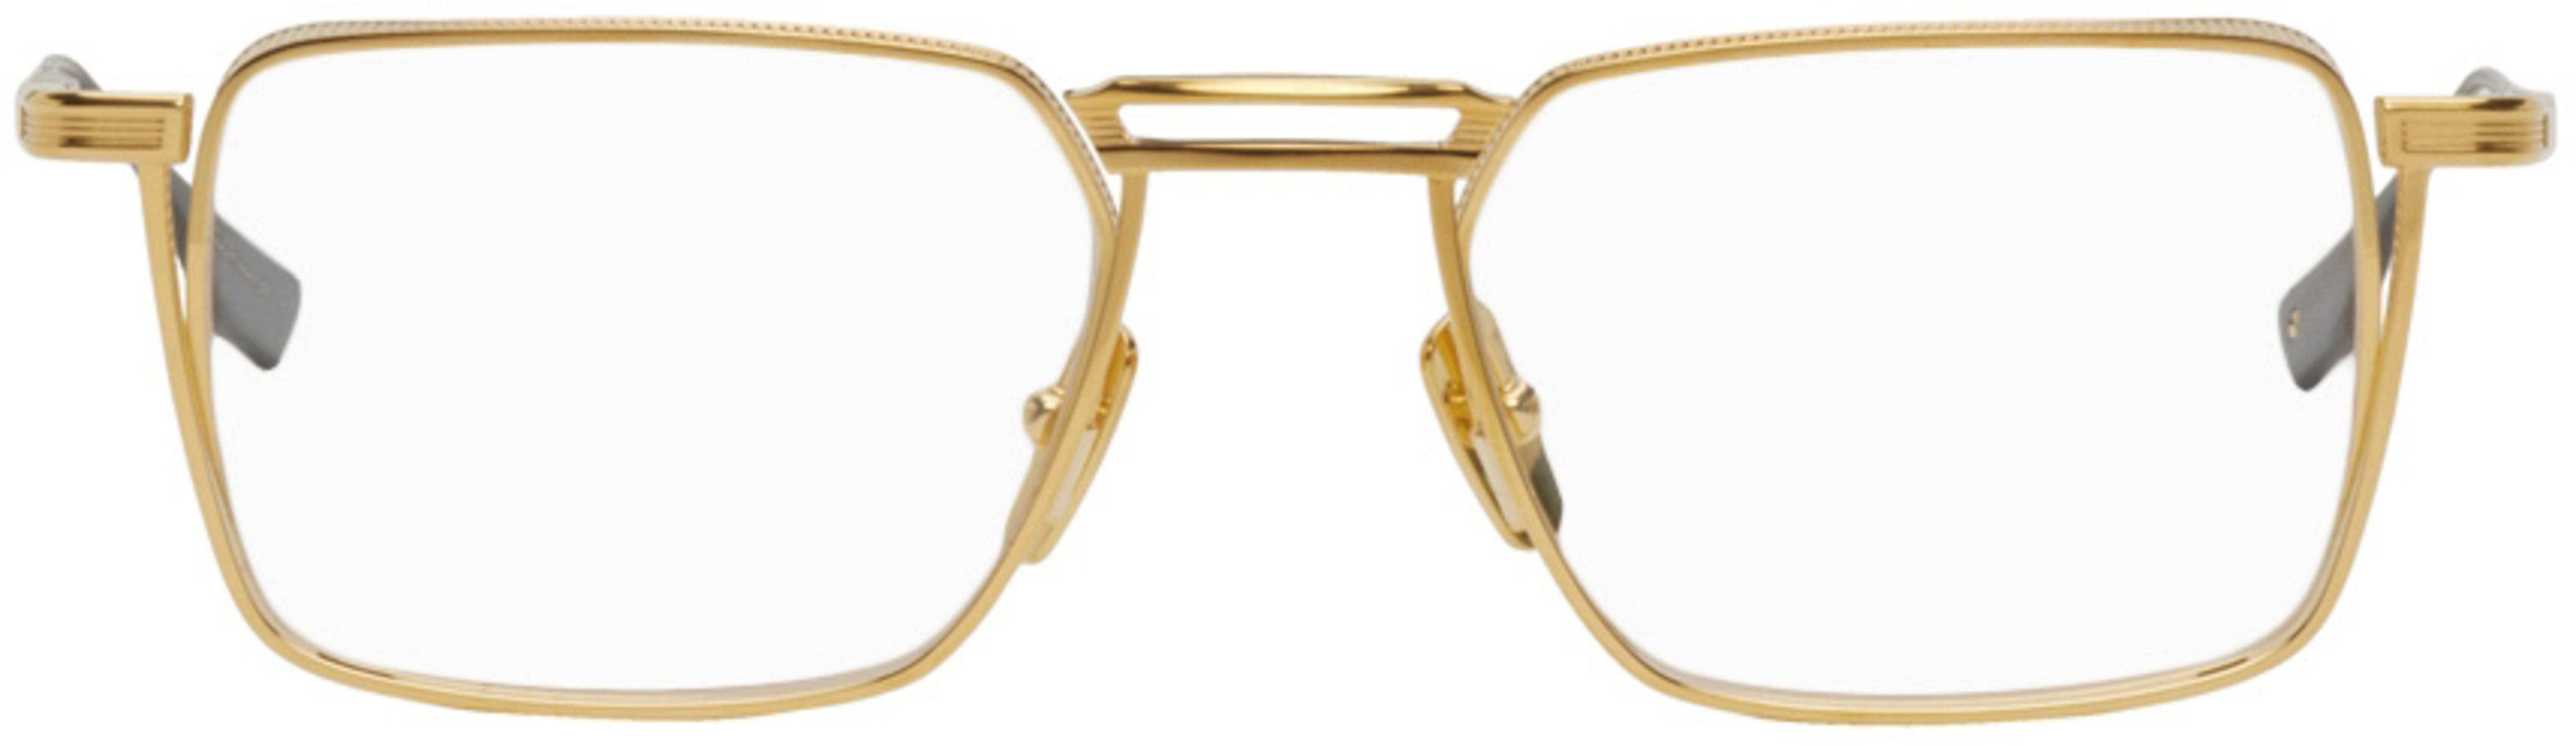 Gold Lindstrum Glasses by DITA